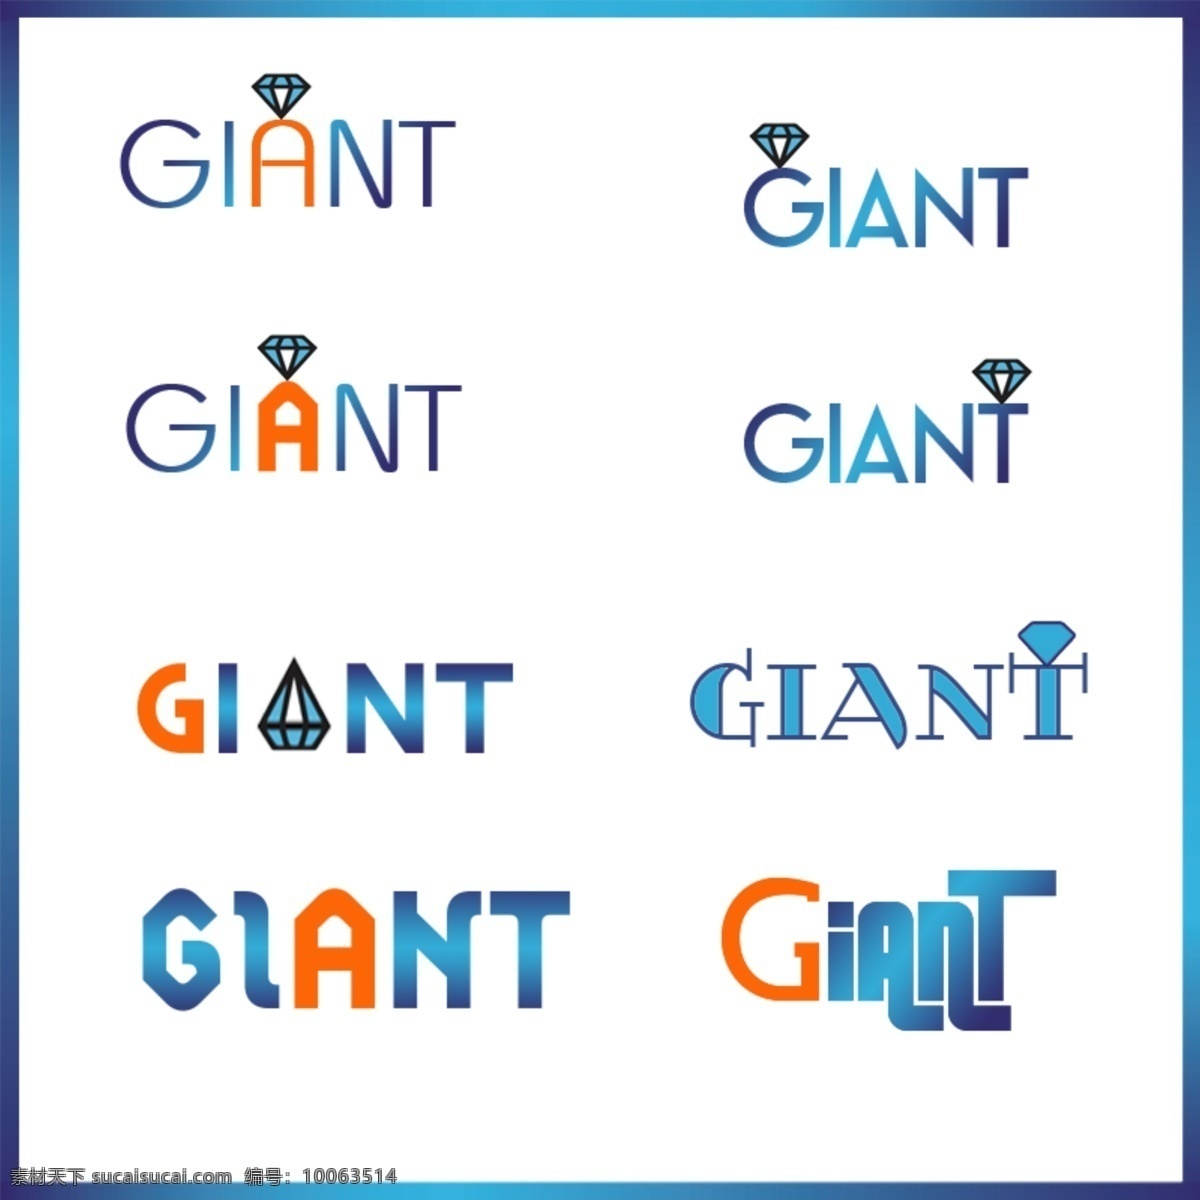 佳 恩 特 giant 英文 字体 logo 佳恩特 英文字体 logo设计 源文件 整体 尺寸 像素 x800